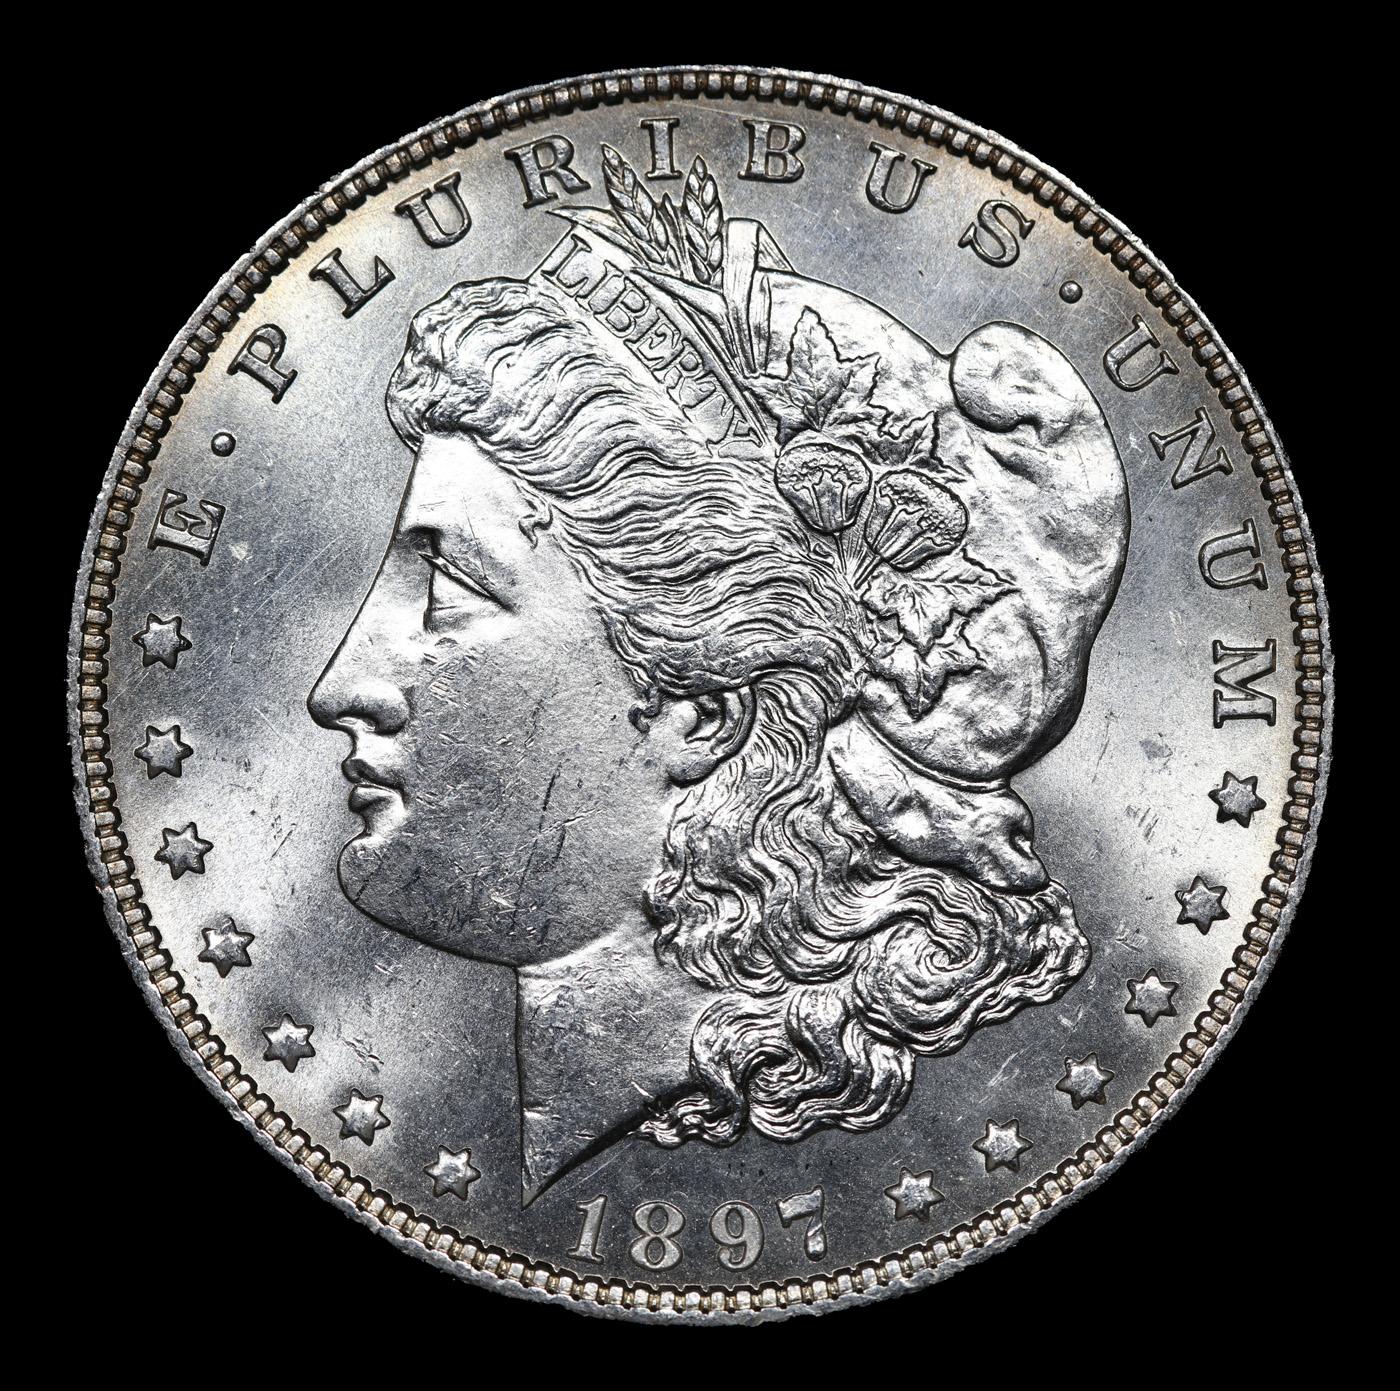 1897-p Morgan Dollar $1 Grades GEM Unc PL